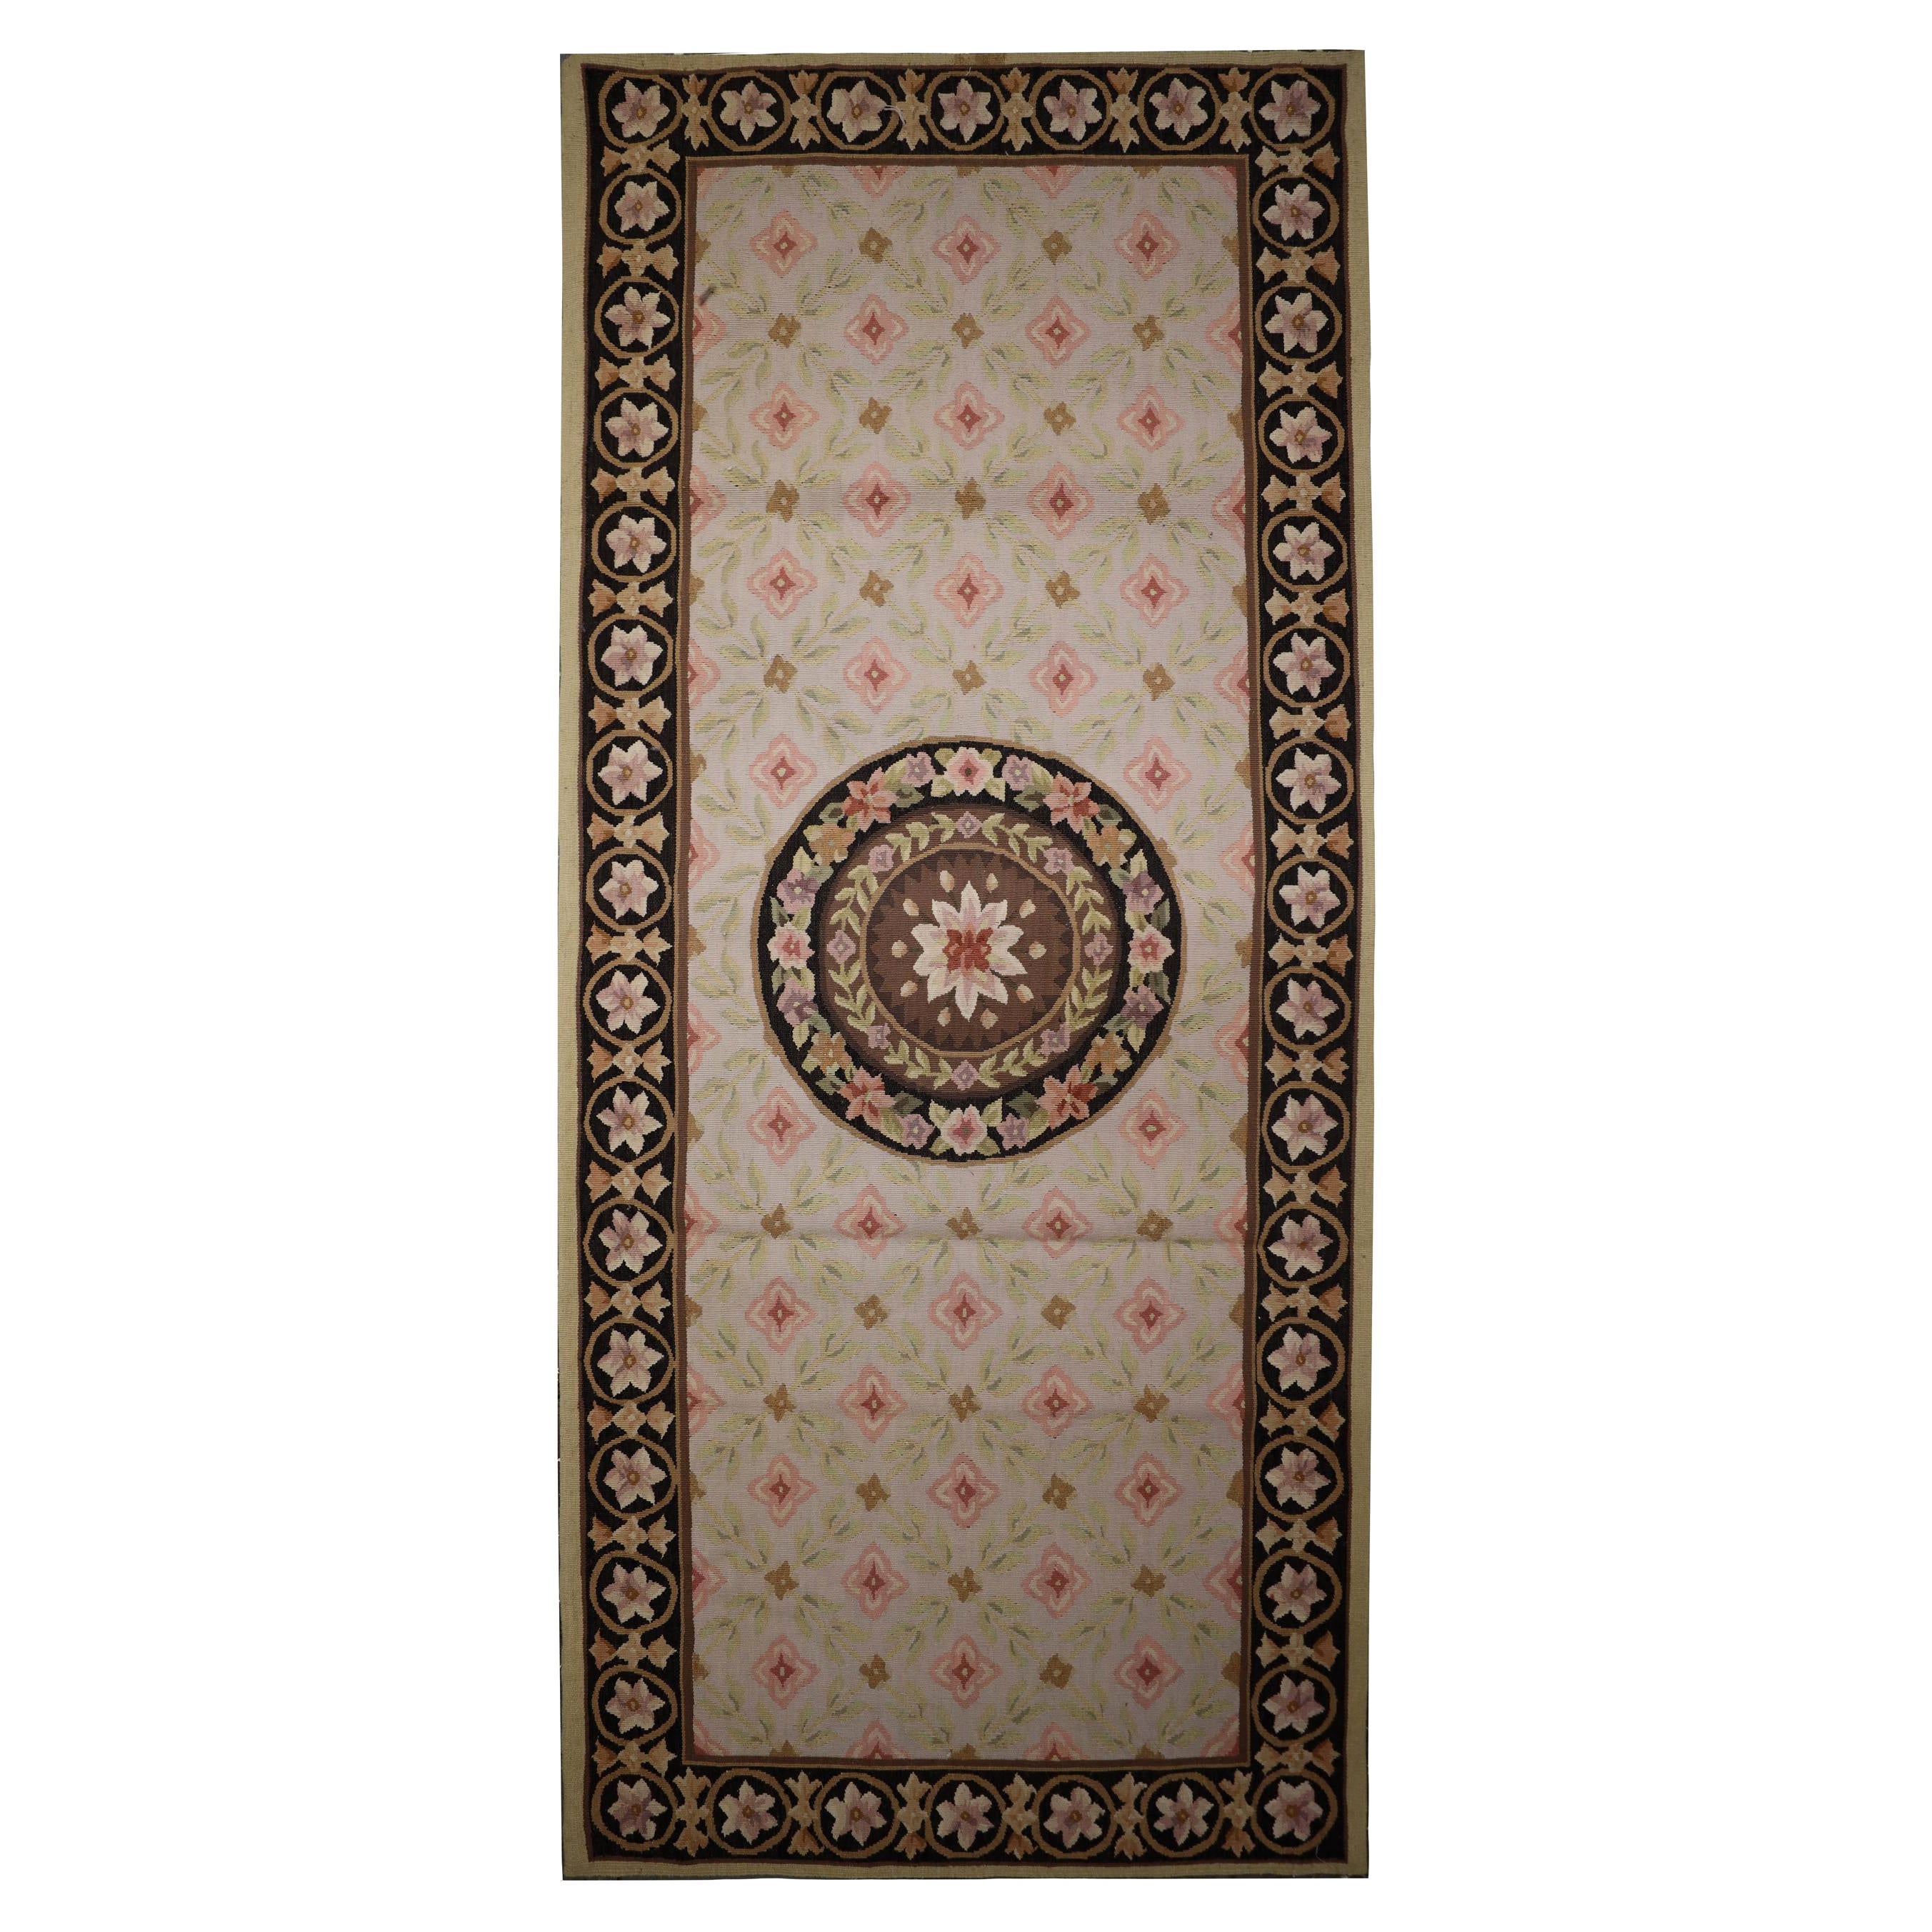 Handgewebter, traditioneller, geblümter Teppich mit Gobelinstickerei in Beige